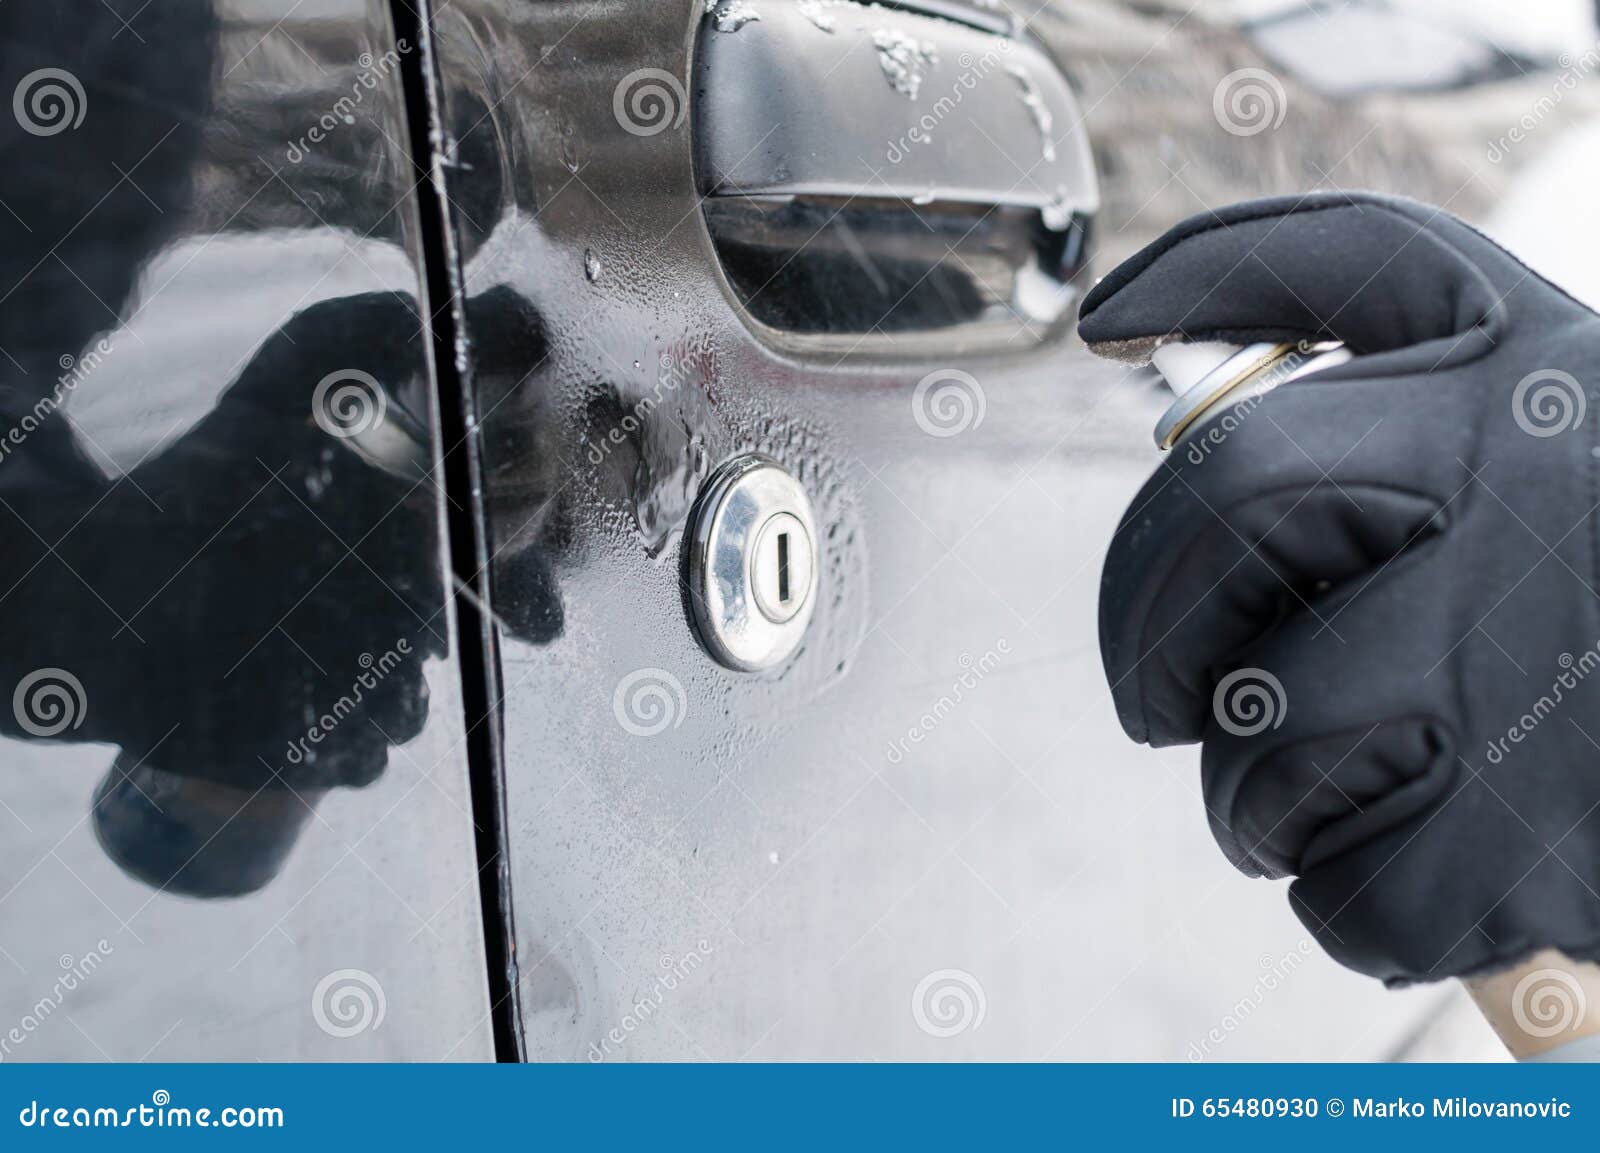 Замерзший замок автомобиля. Примерзшая дверь автомобиля. Разморозка замка двери автомобиля. Разморозить замок автомобиля. Замерзший замок.